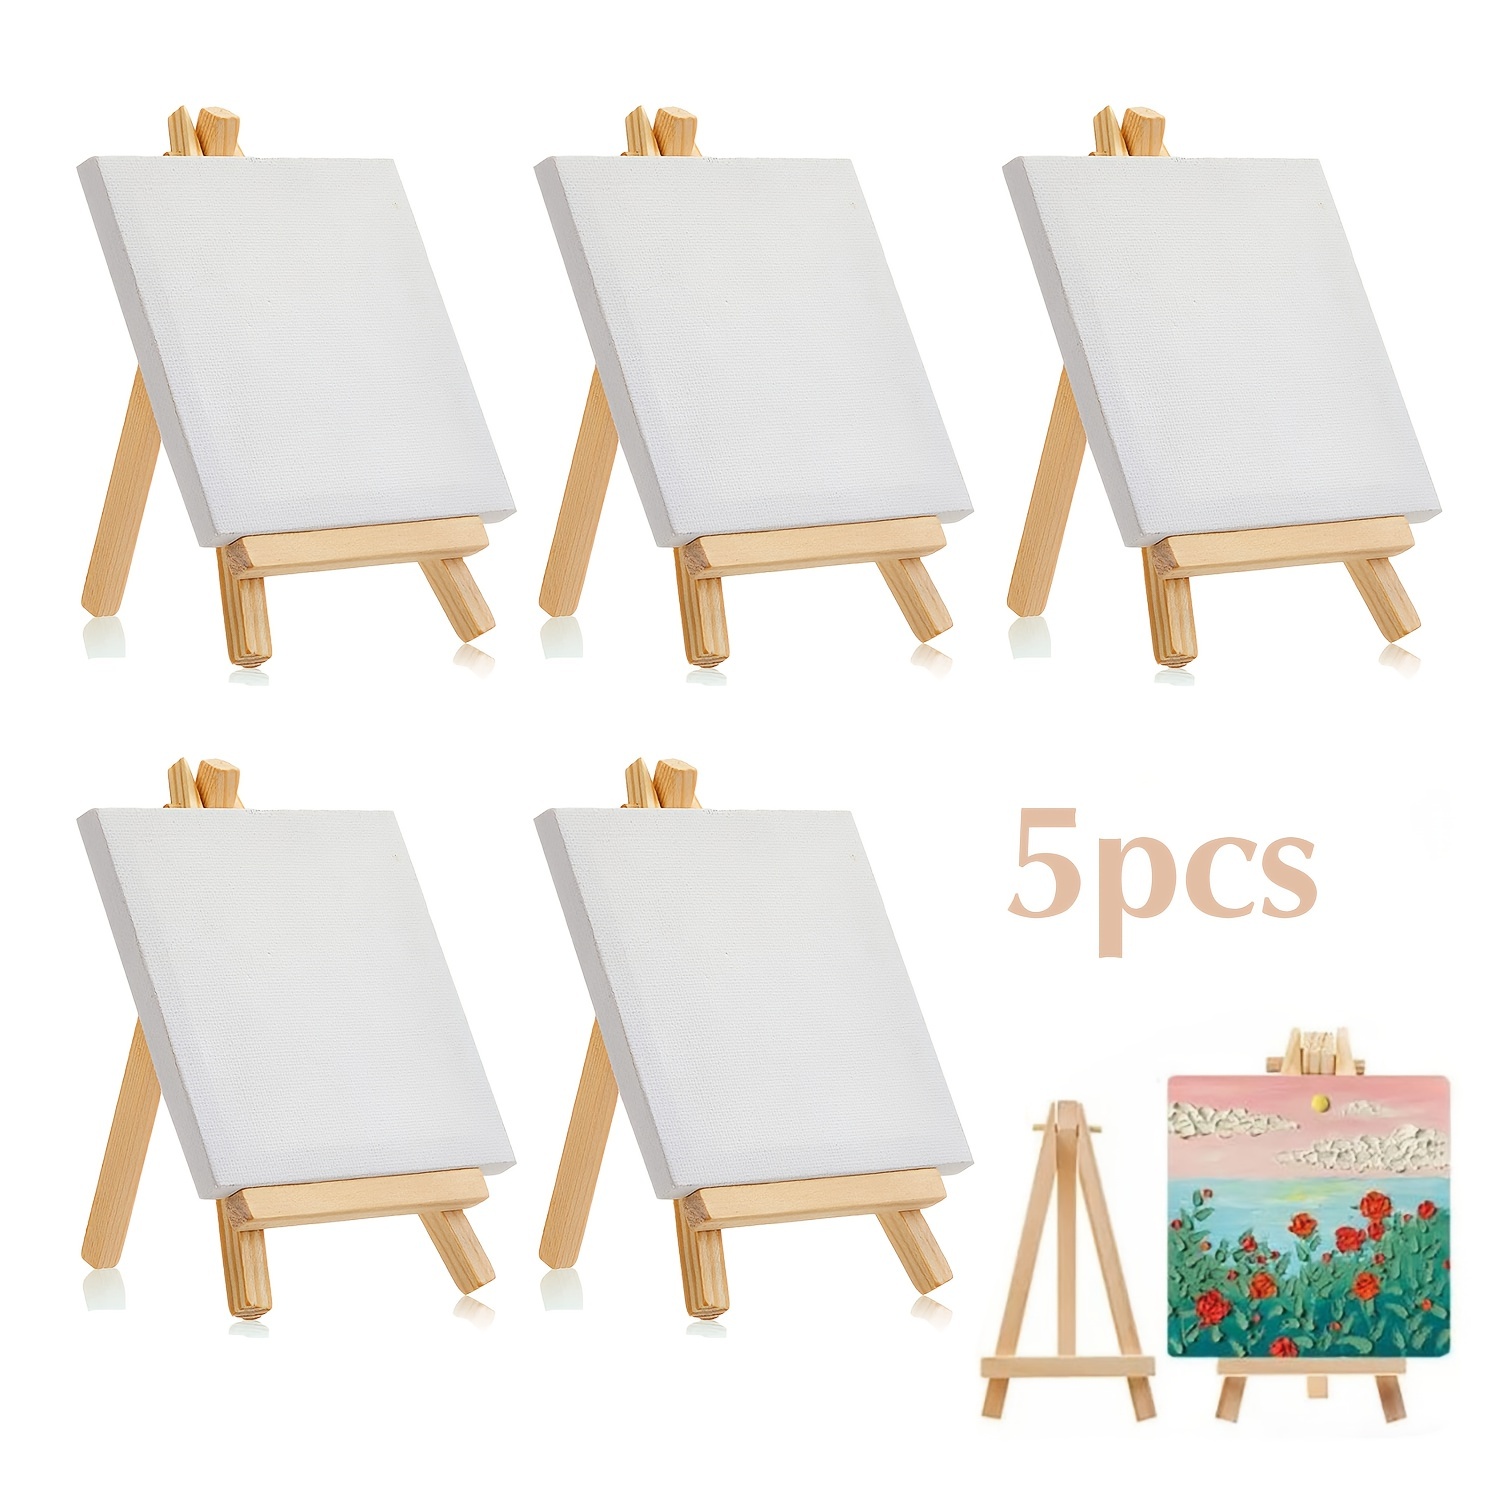  Paquete de 24 lienzos para pintar de 4 x 4, 5 x 7, 8 x